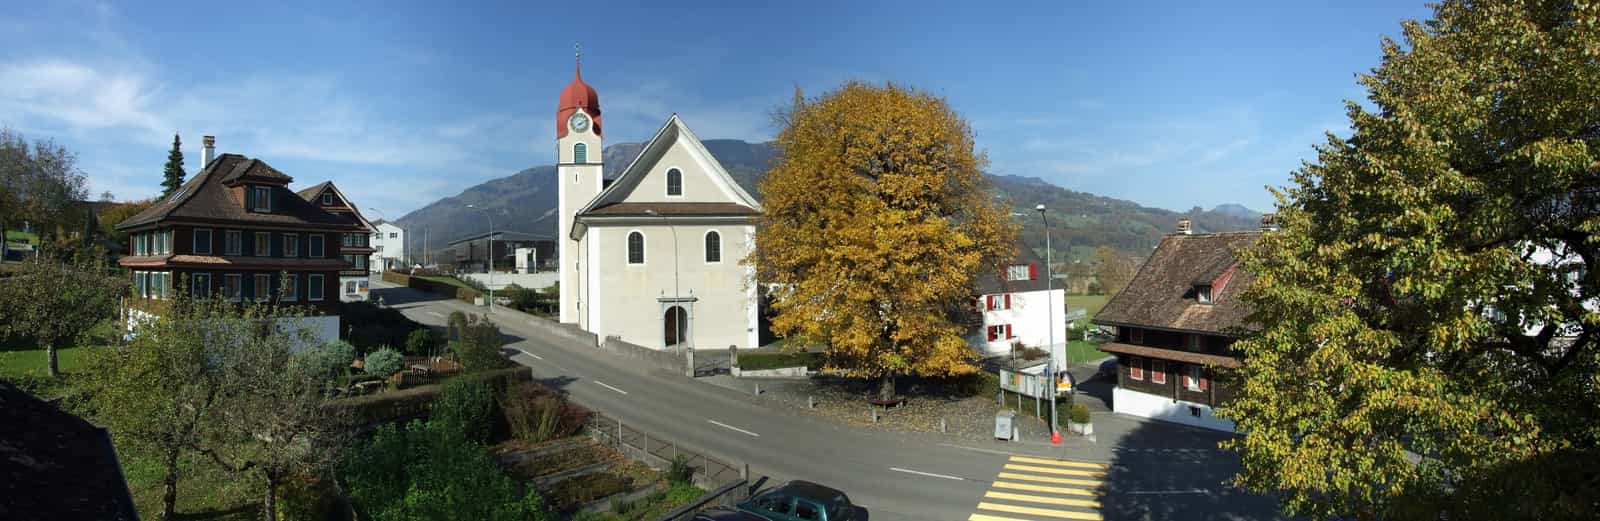 Ortskern von Lauerz mit Kirche